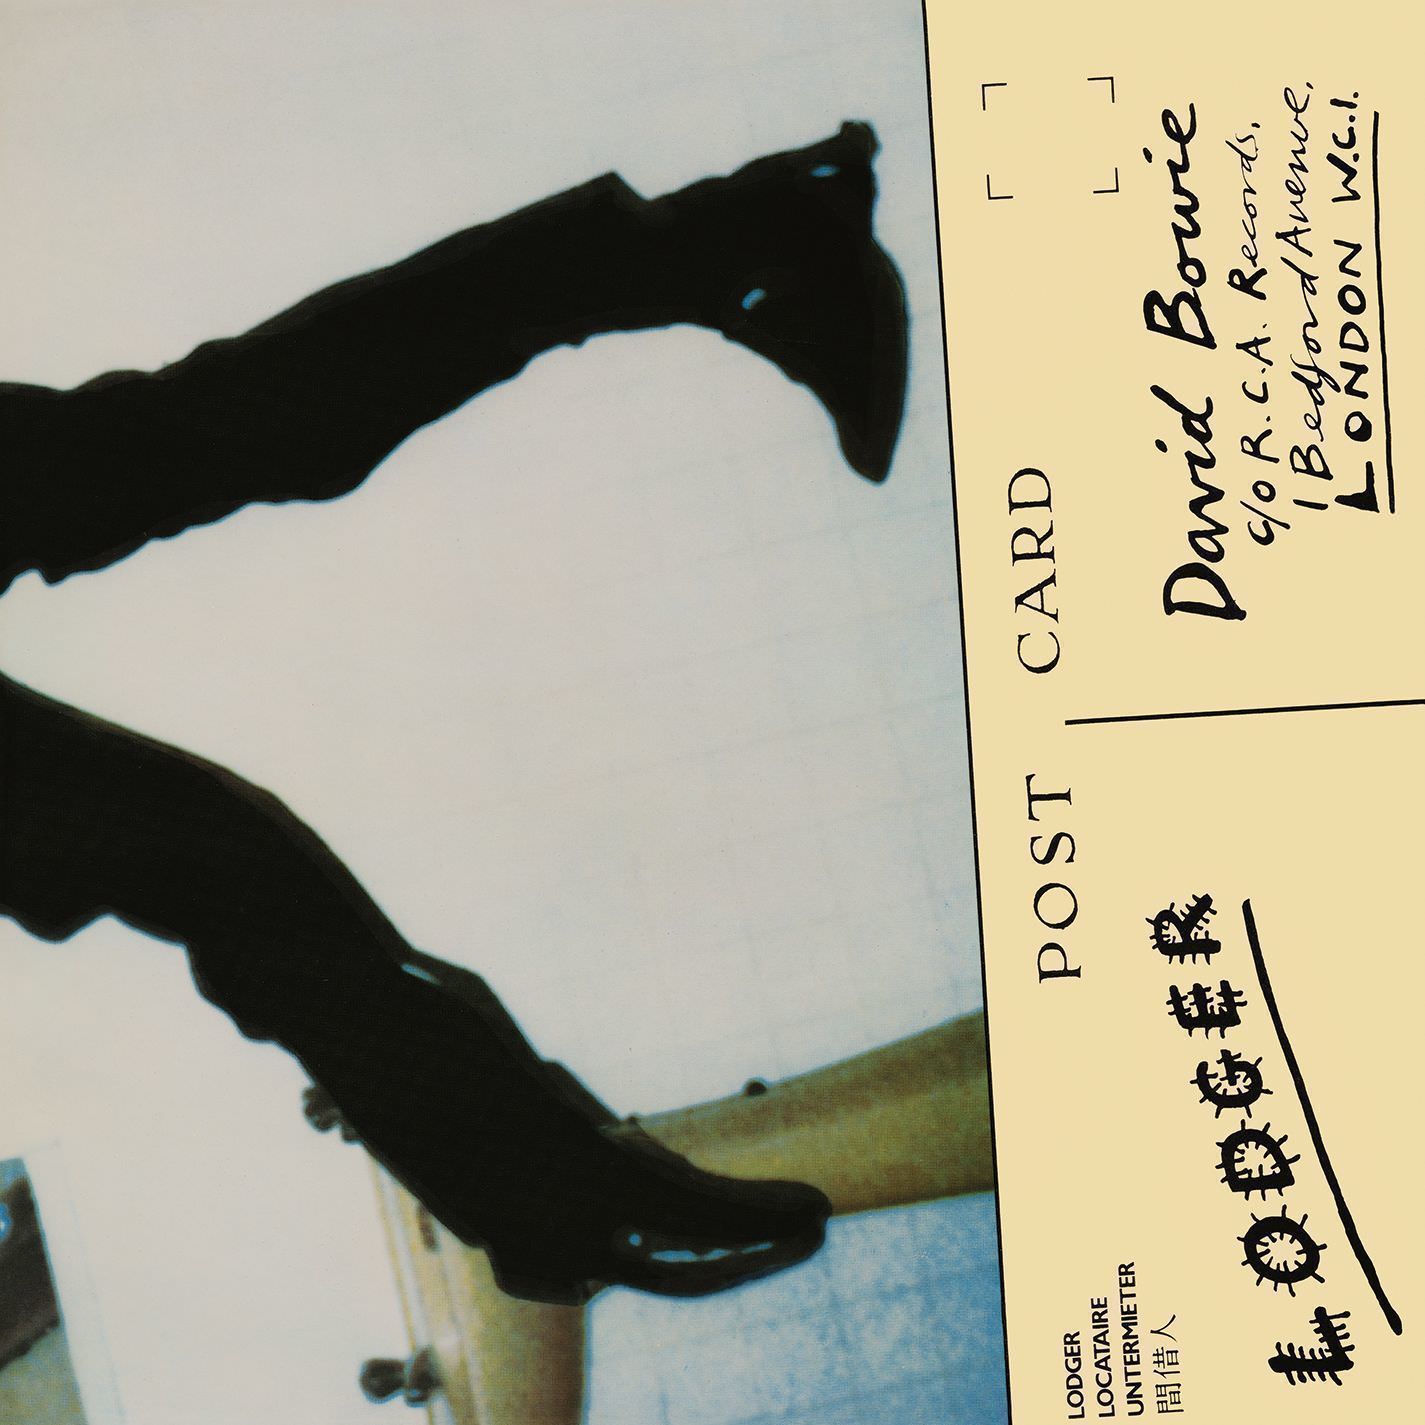 David Bowie – Lodger (1979/2017) [Mora FLAC 24bit/192kHz] – MQS Albums ...